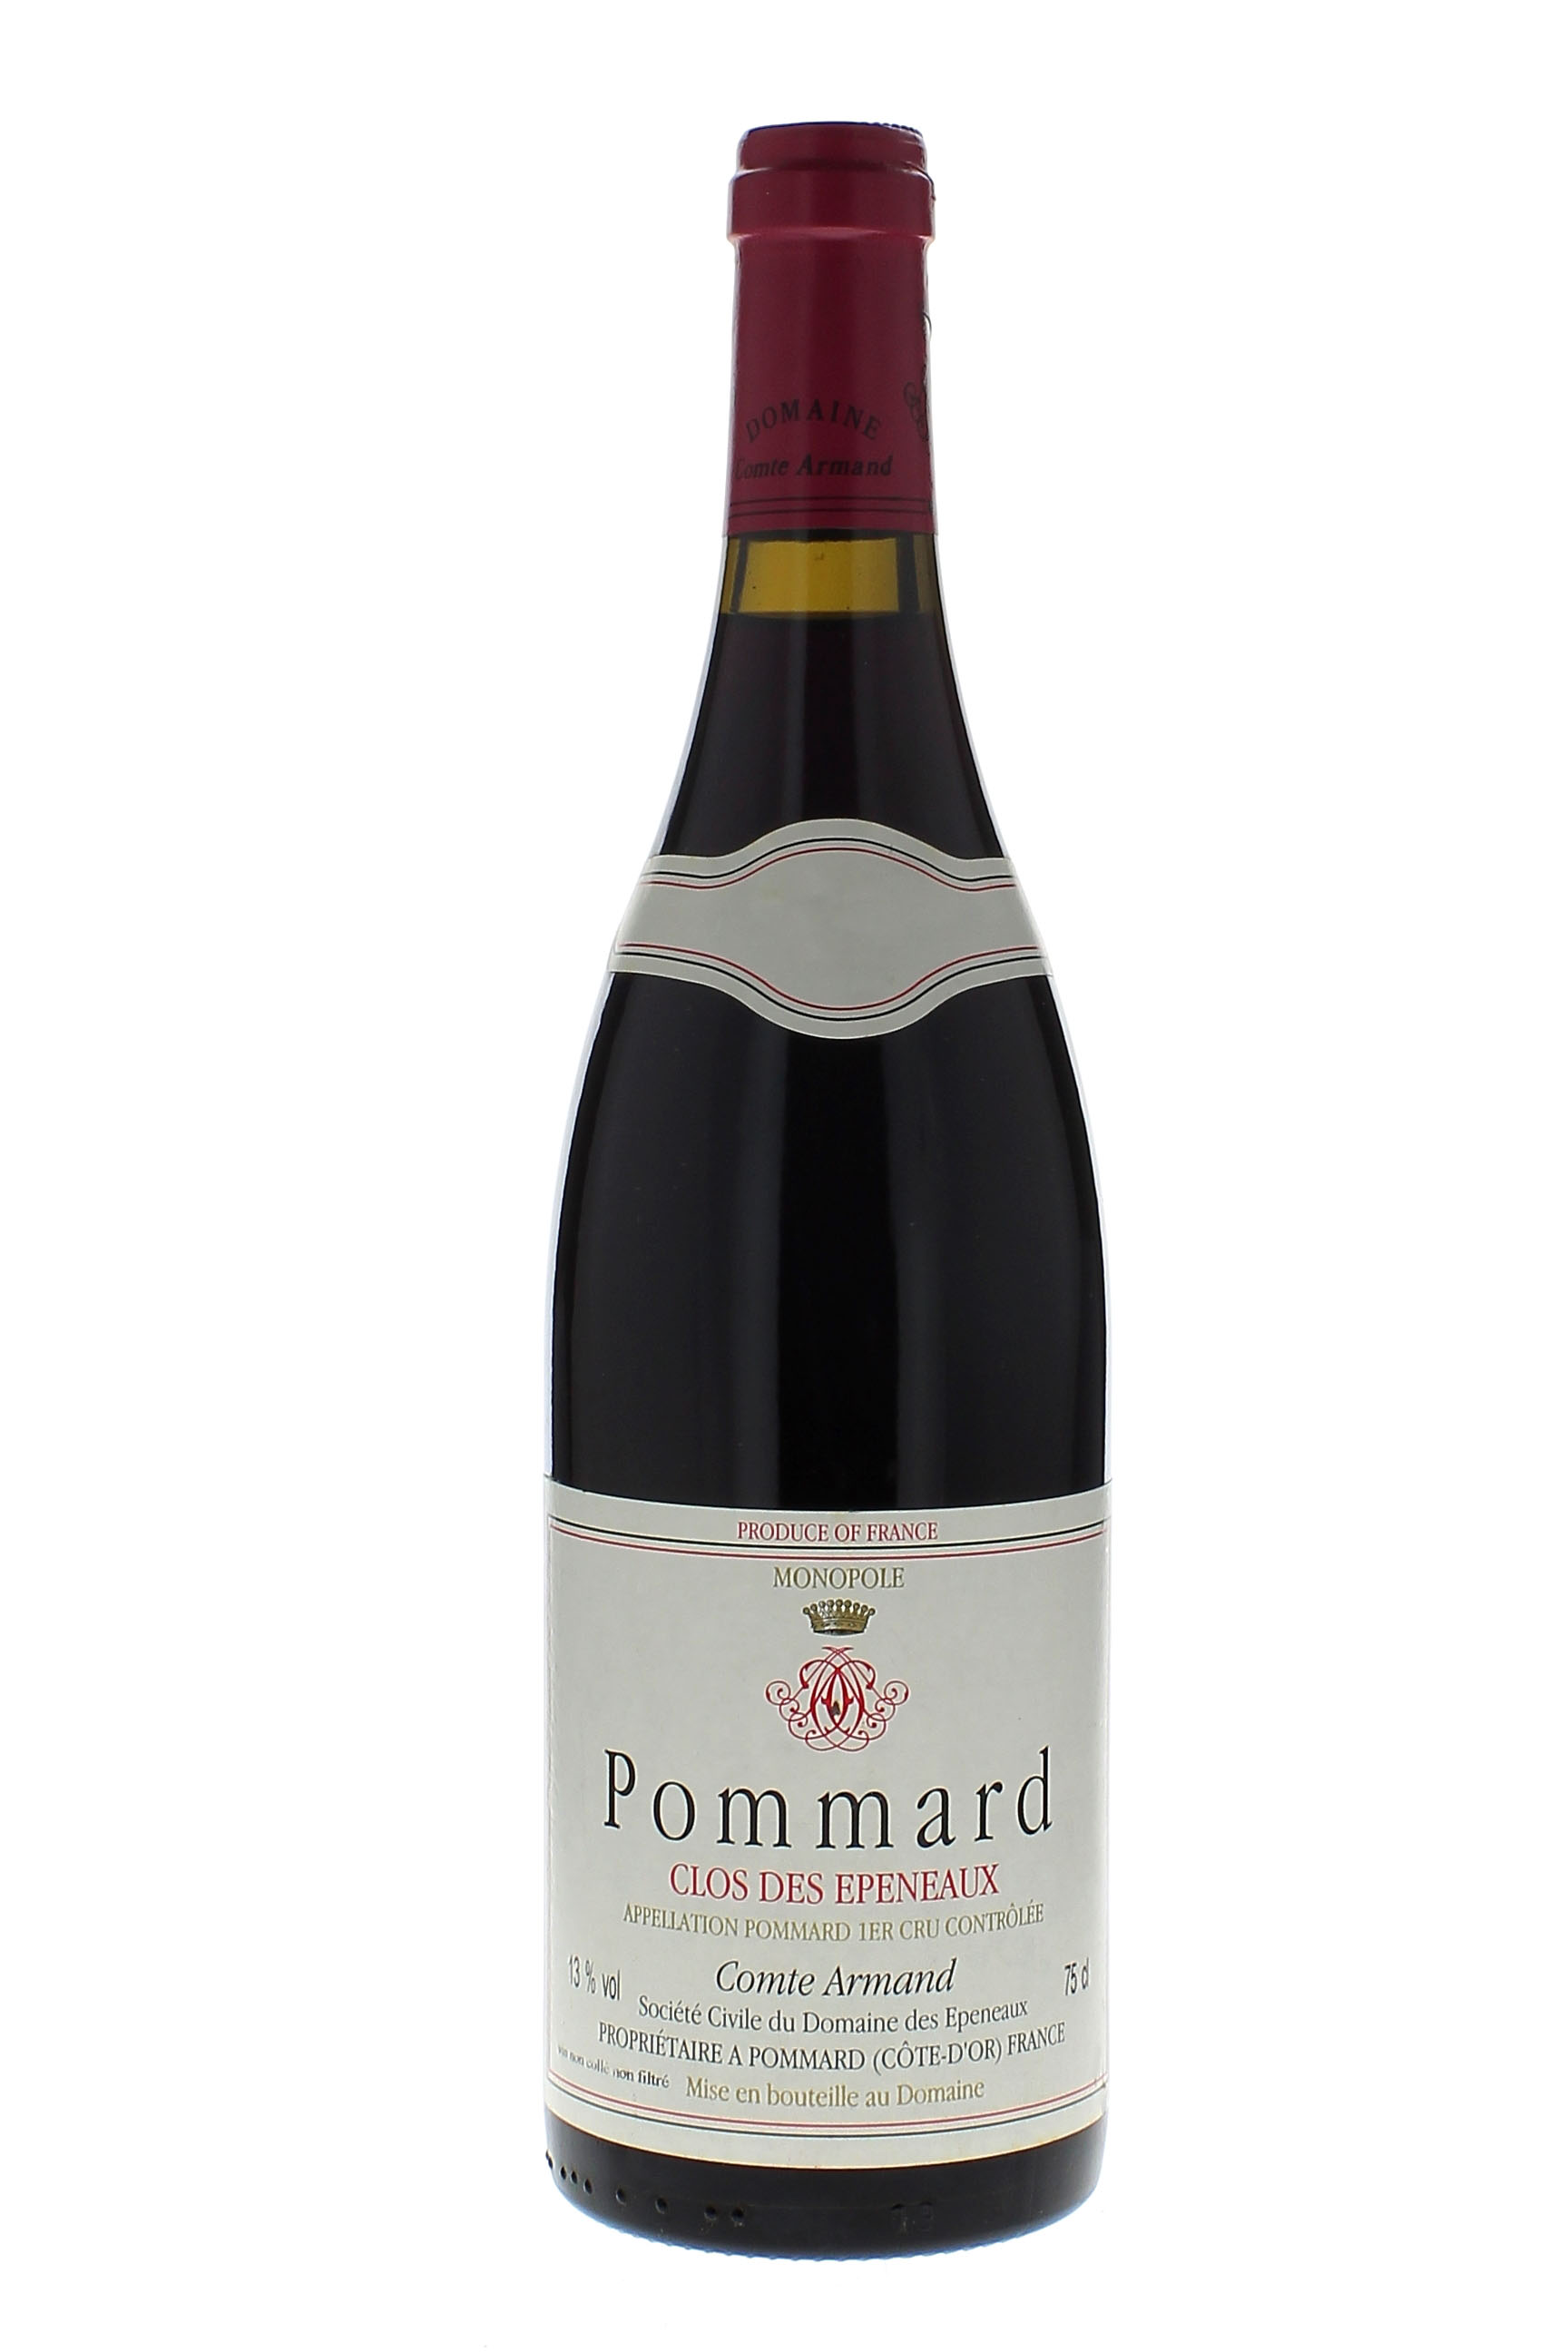 Pommard clos des epeneaux 1er cru 2003 Domaine Comte ARMAND, Bourgogne rouge